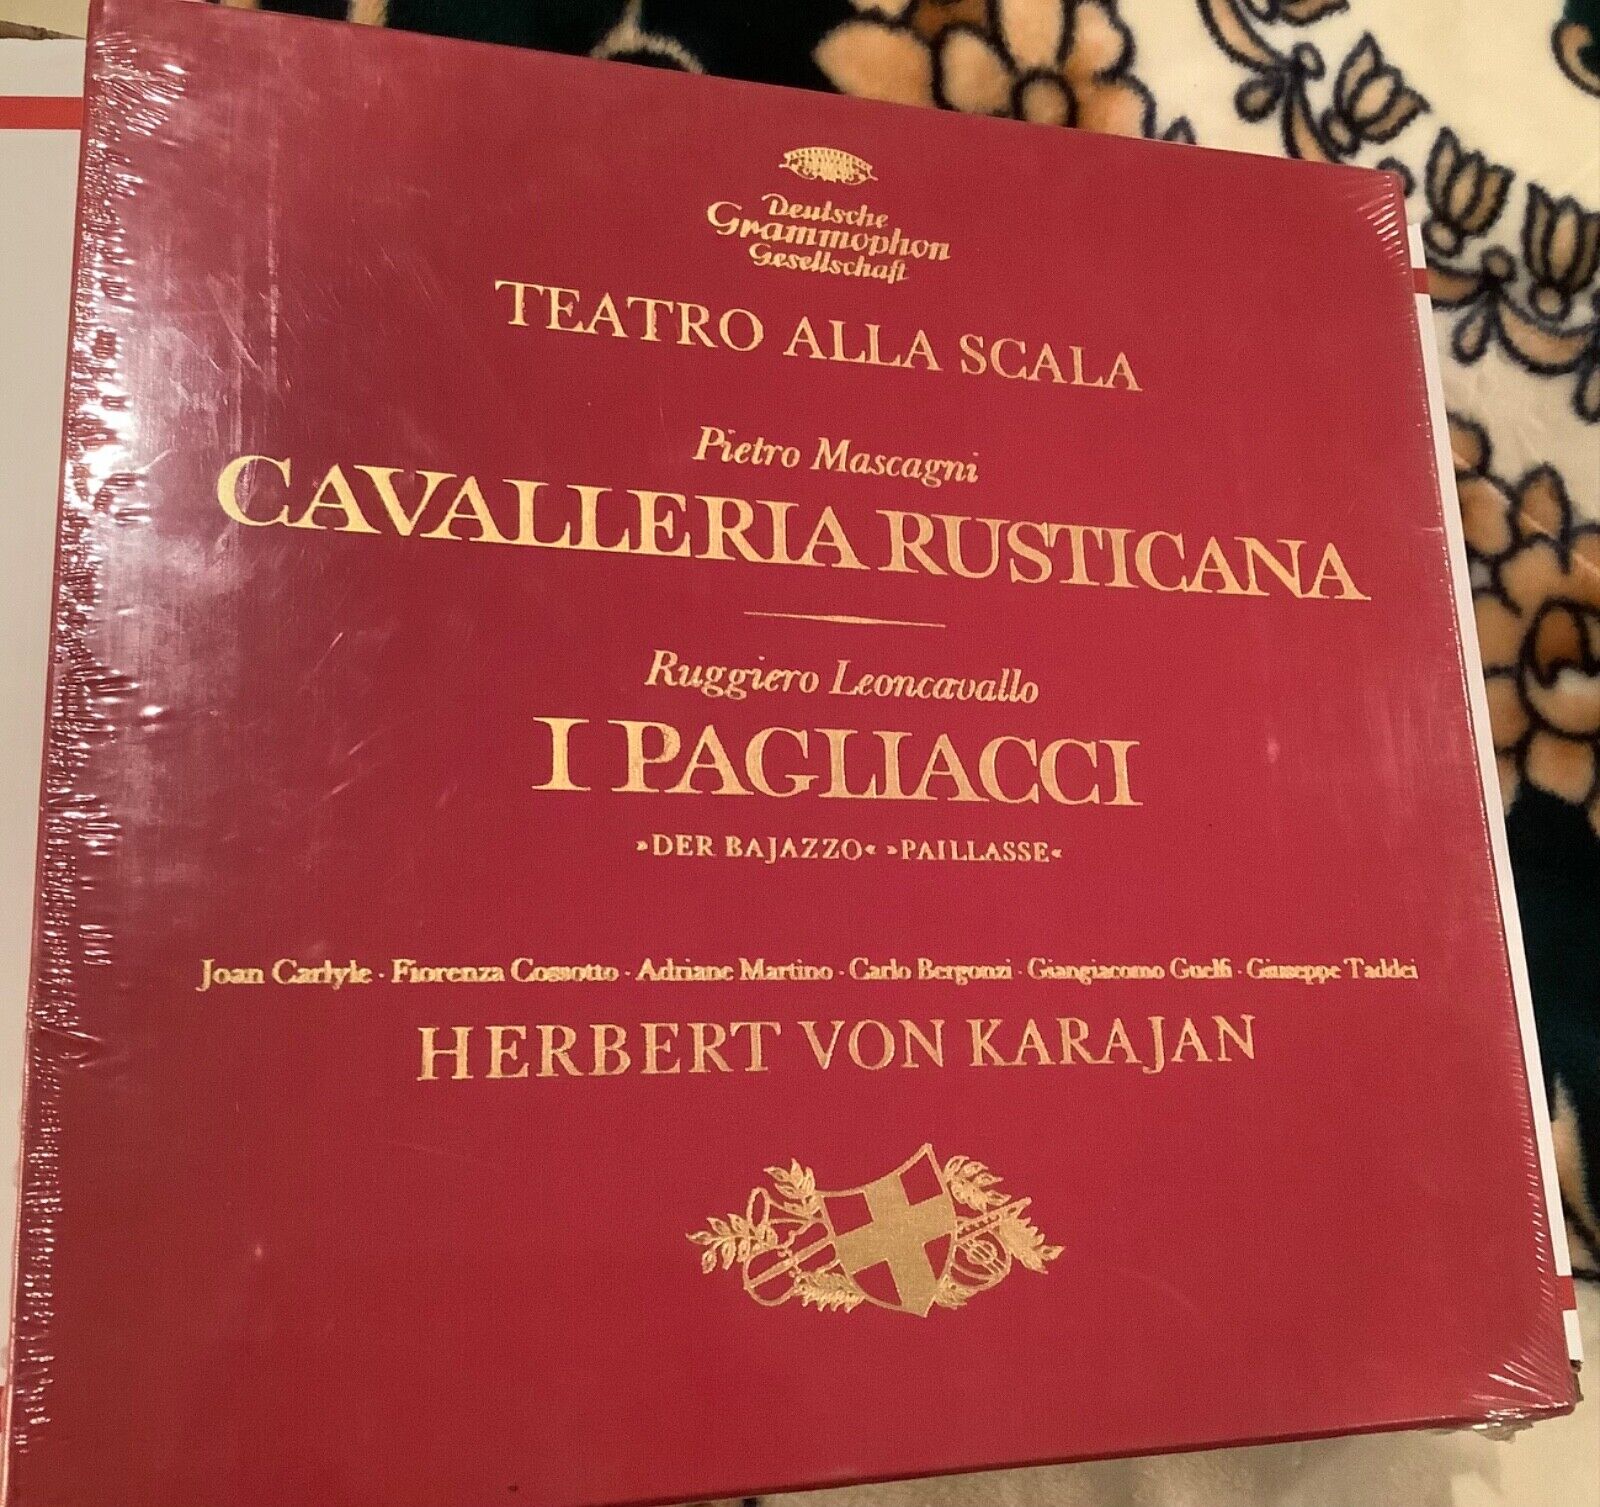 Deutsche Grammophon Gesellschaft Teatro Alla Scala 3 LP Vinyls VTG 1966 Sealed